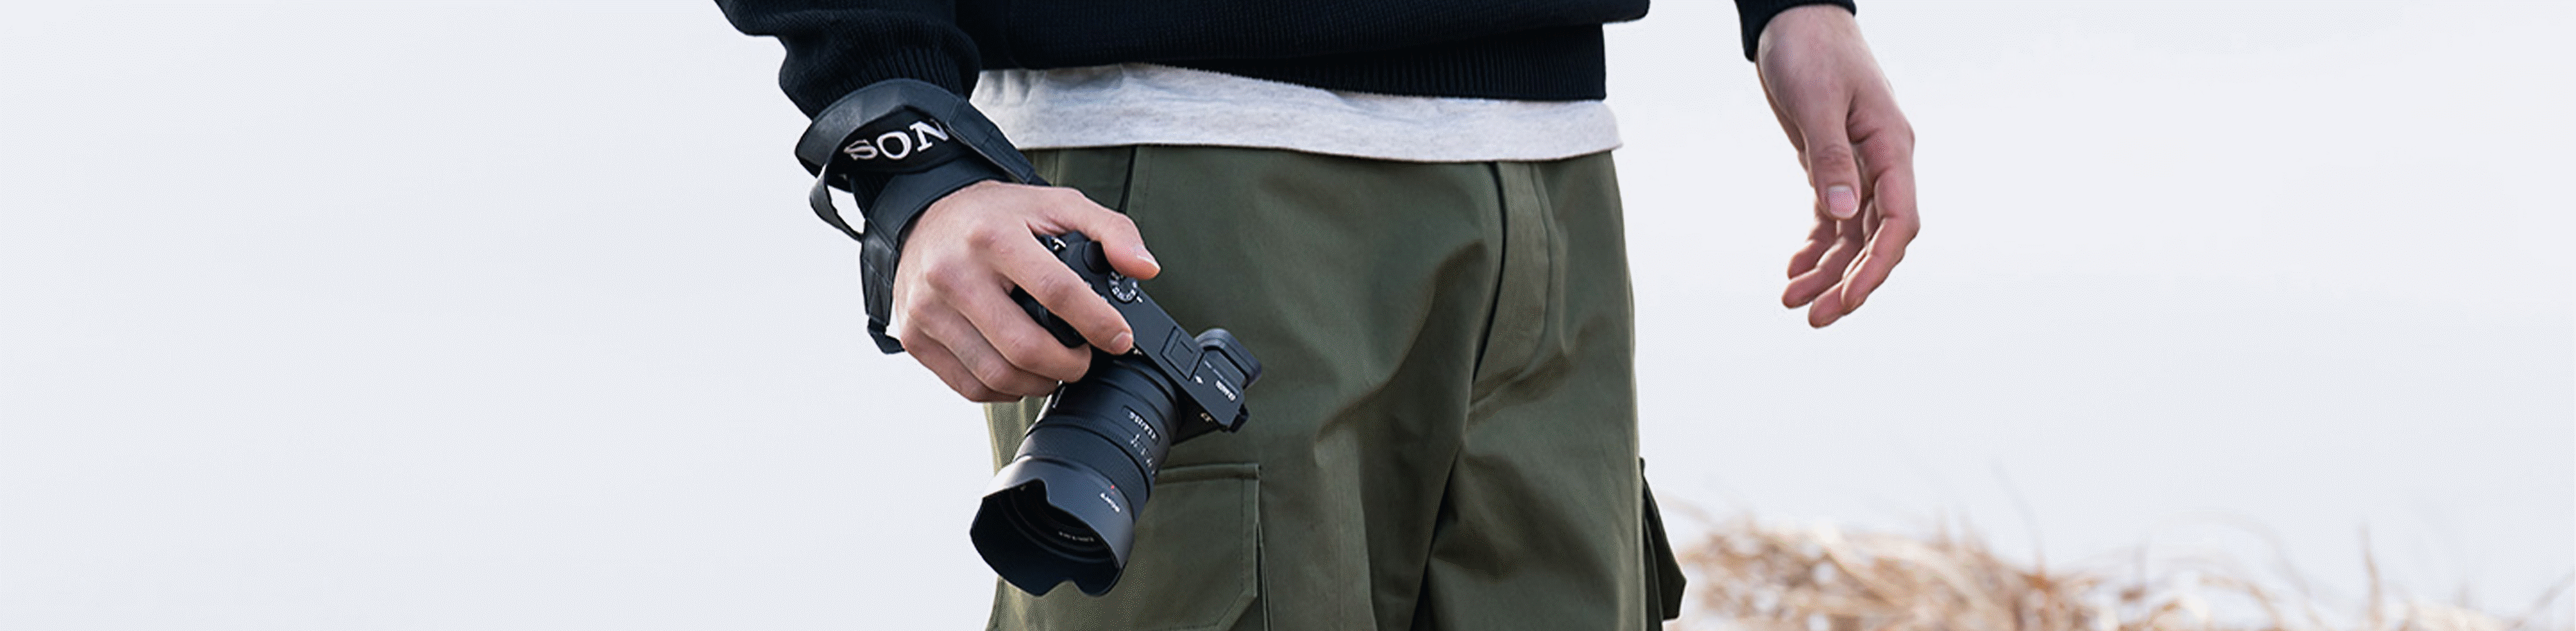 Изображение на човек, носещ фотоапарат в ръка